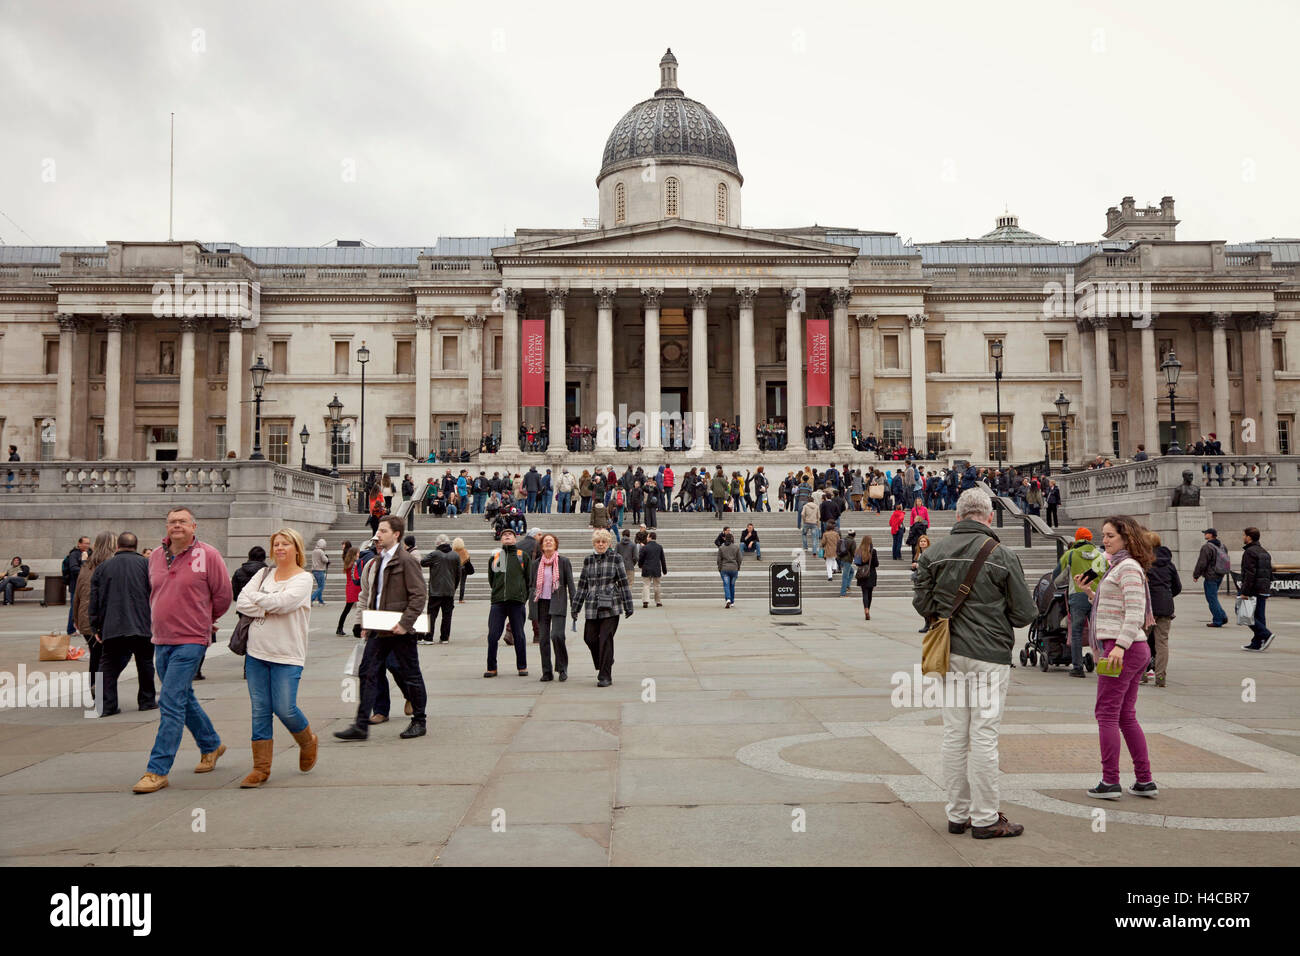 Gran Bretagna, Londra, spazio, architettura, museo, pilastri, turisti, Foto Stock